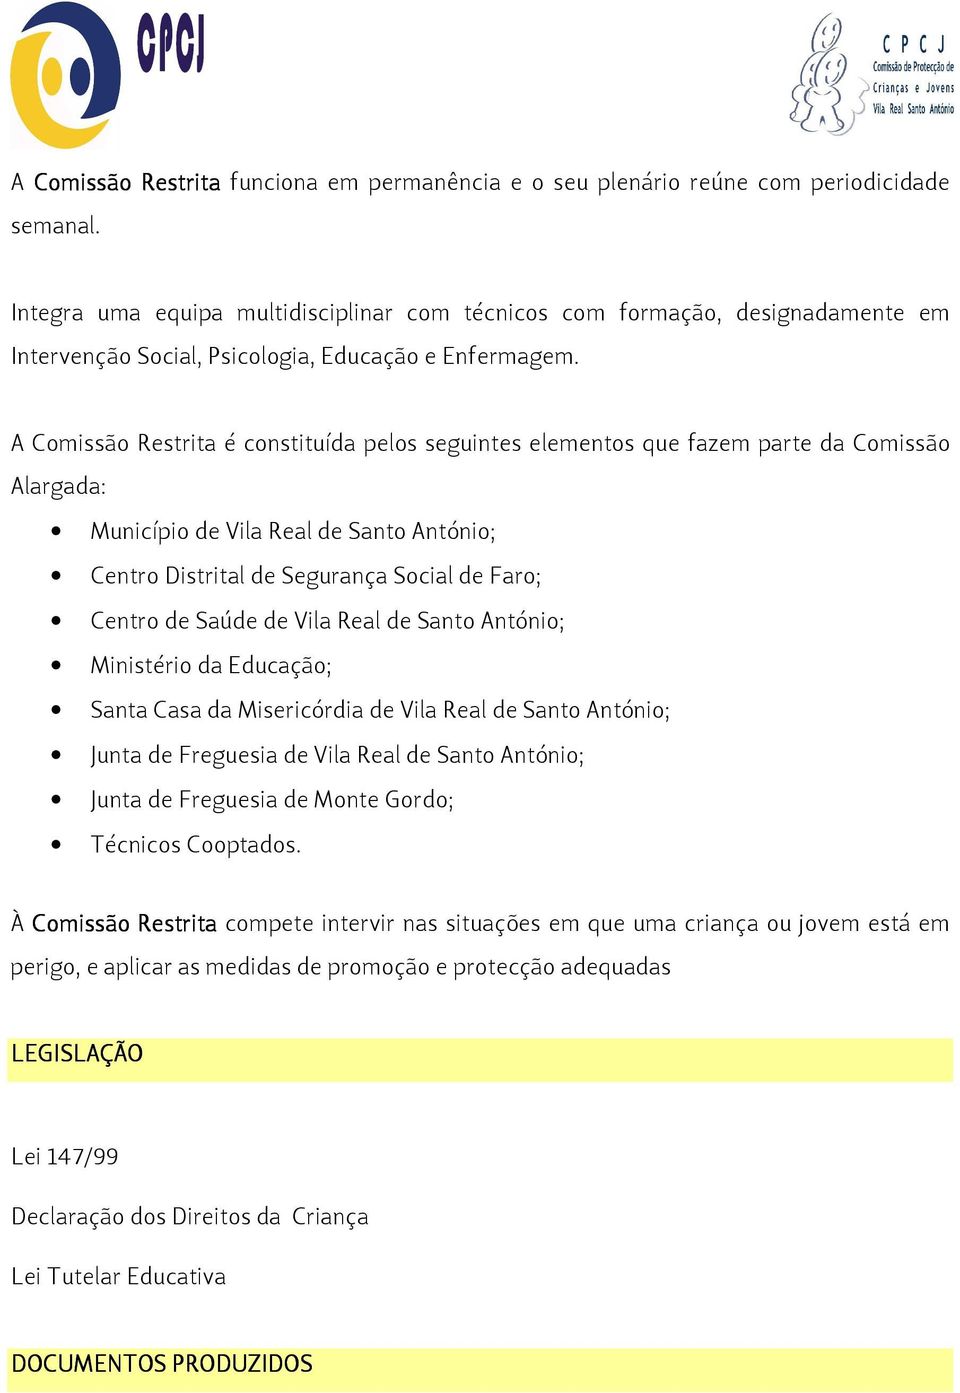 A Comissão Restrita é constituída pelos seguintes elementos que fazem parte da Comissão Alargada: Município de Vila Real de Santo António; Centro Distrital de Segurança Social de Faro; Centro de